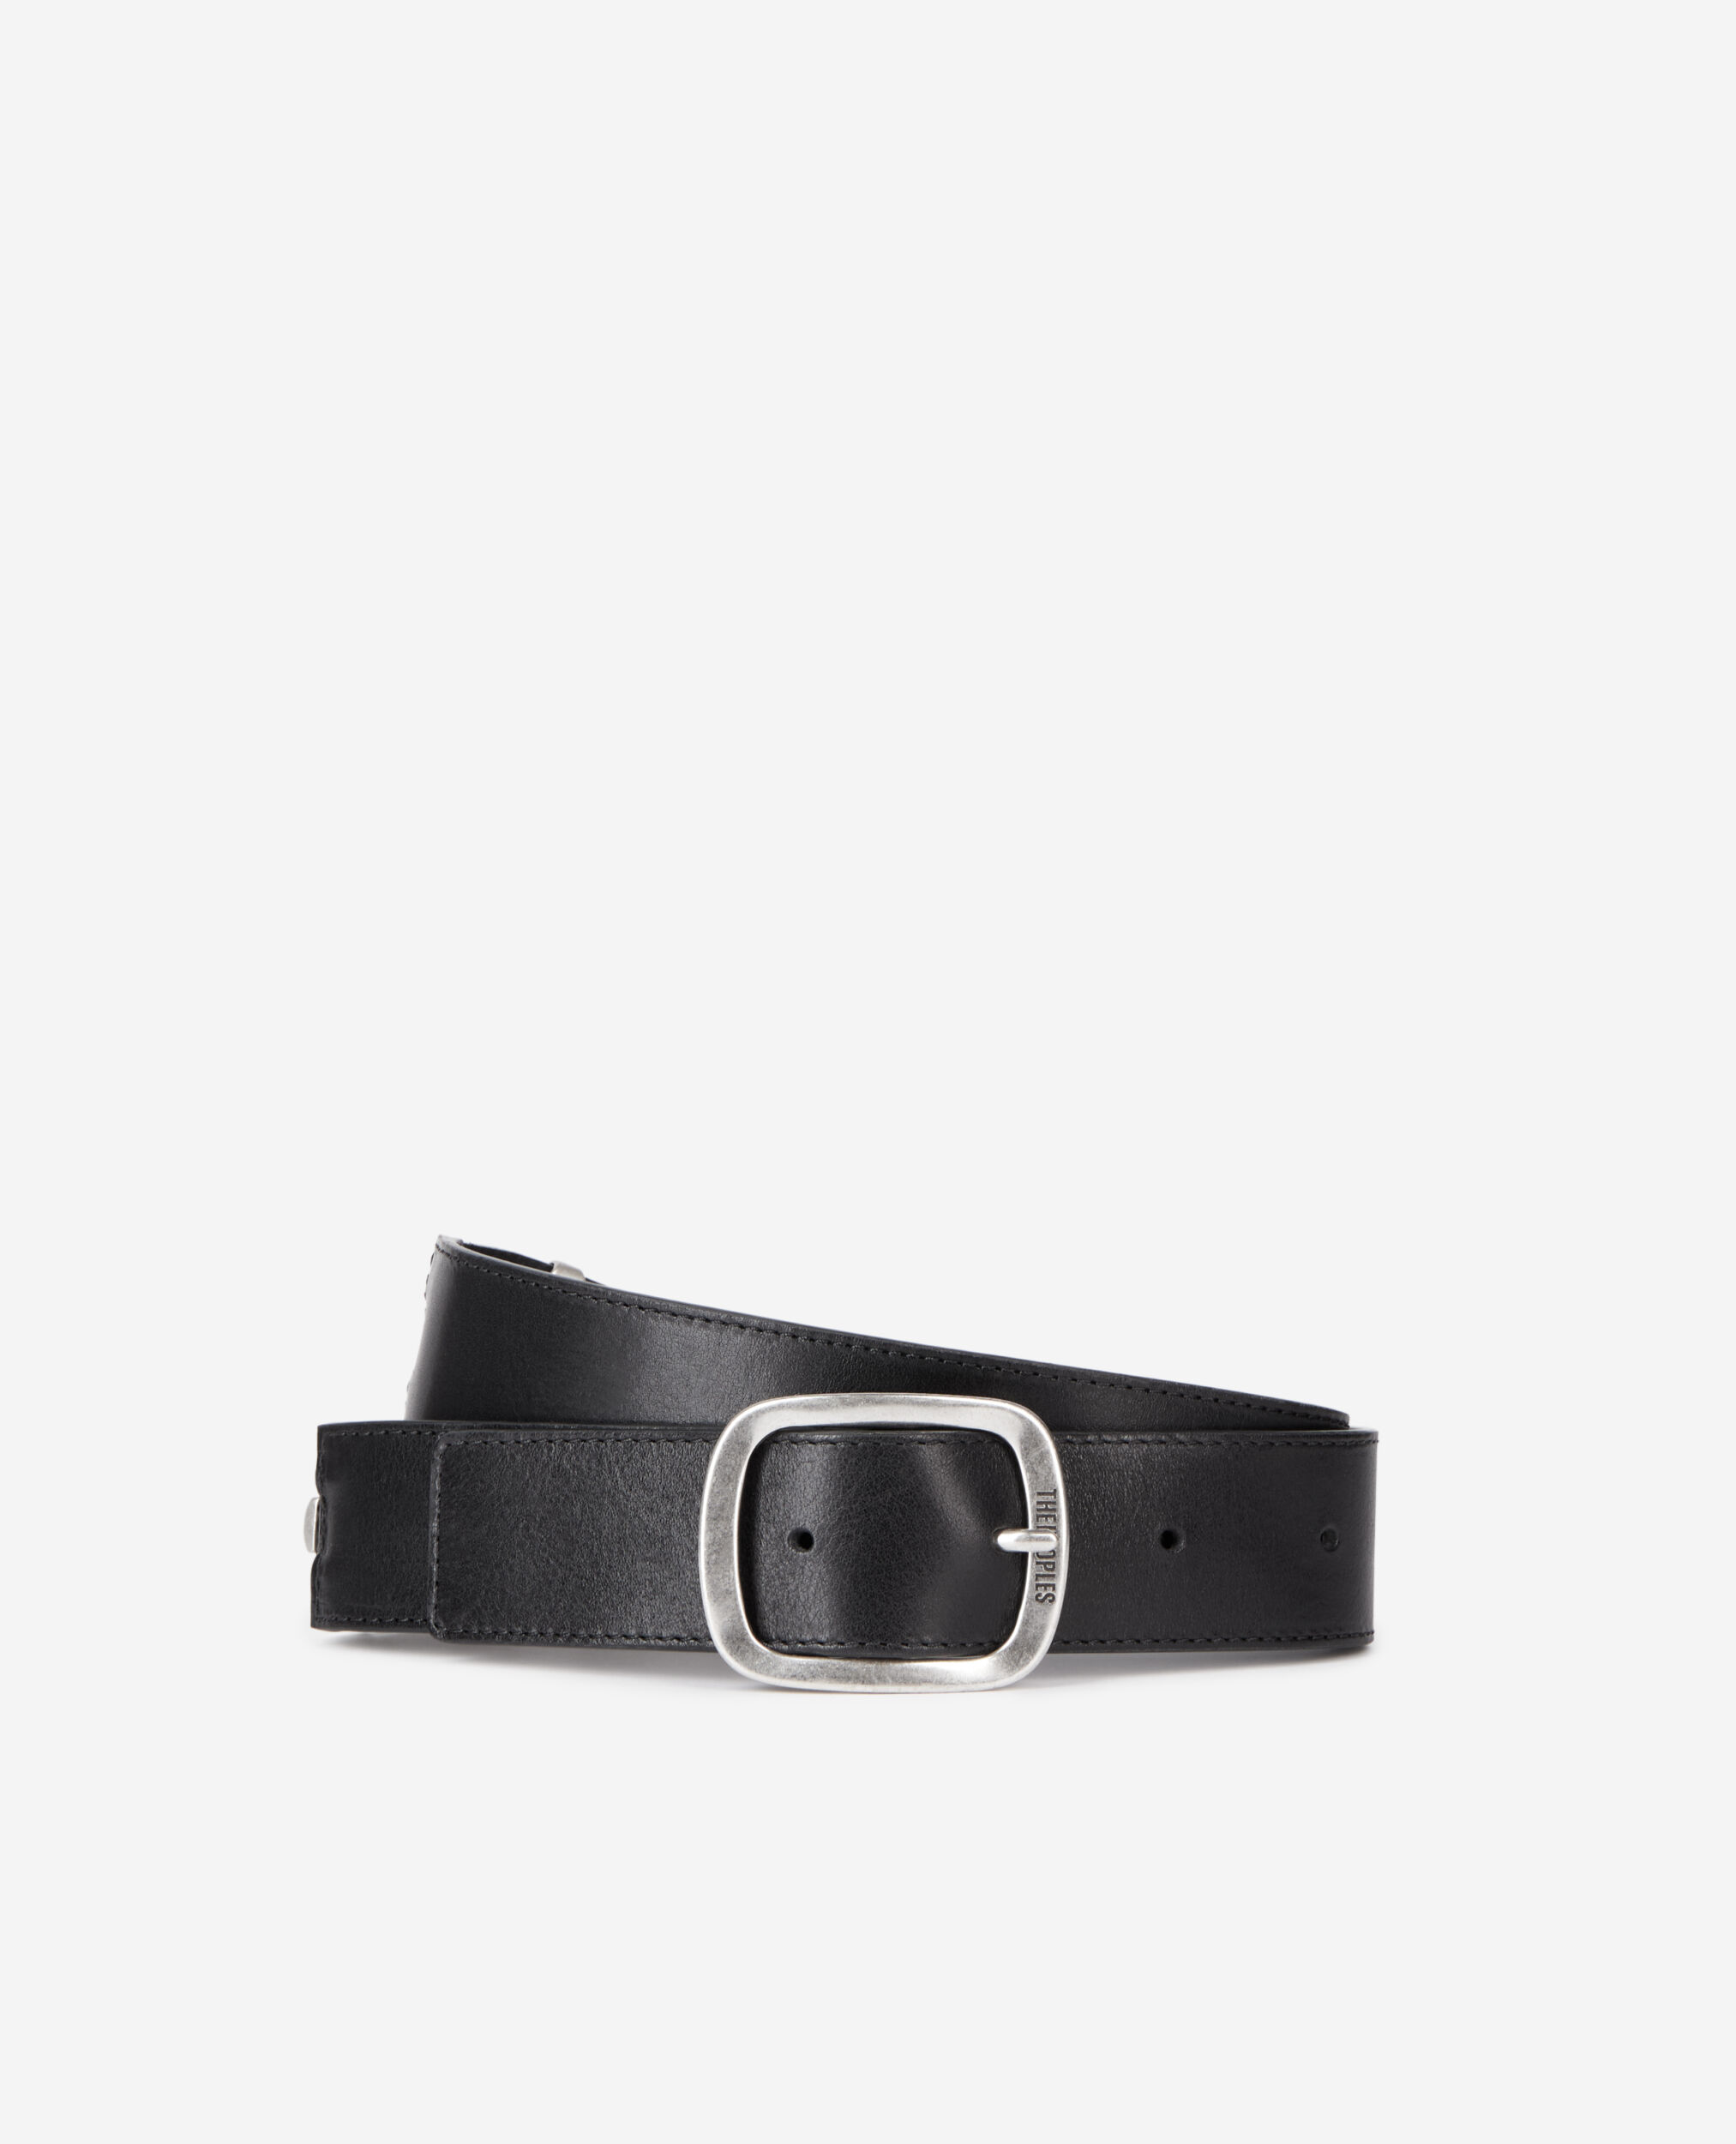 Cinturón piel negro piezas metálicas, BLACK, hi-res image number null